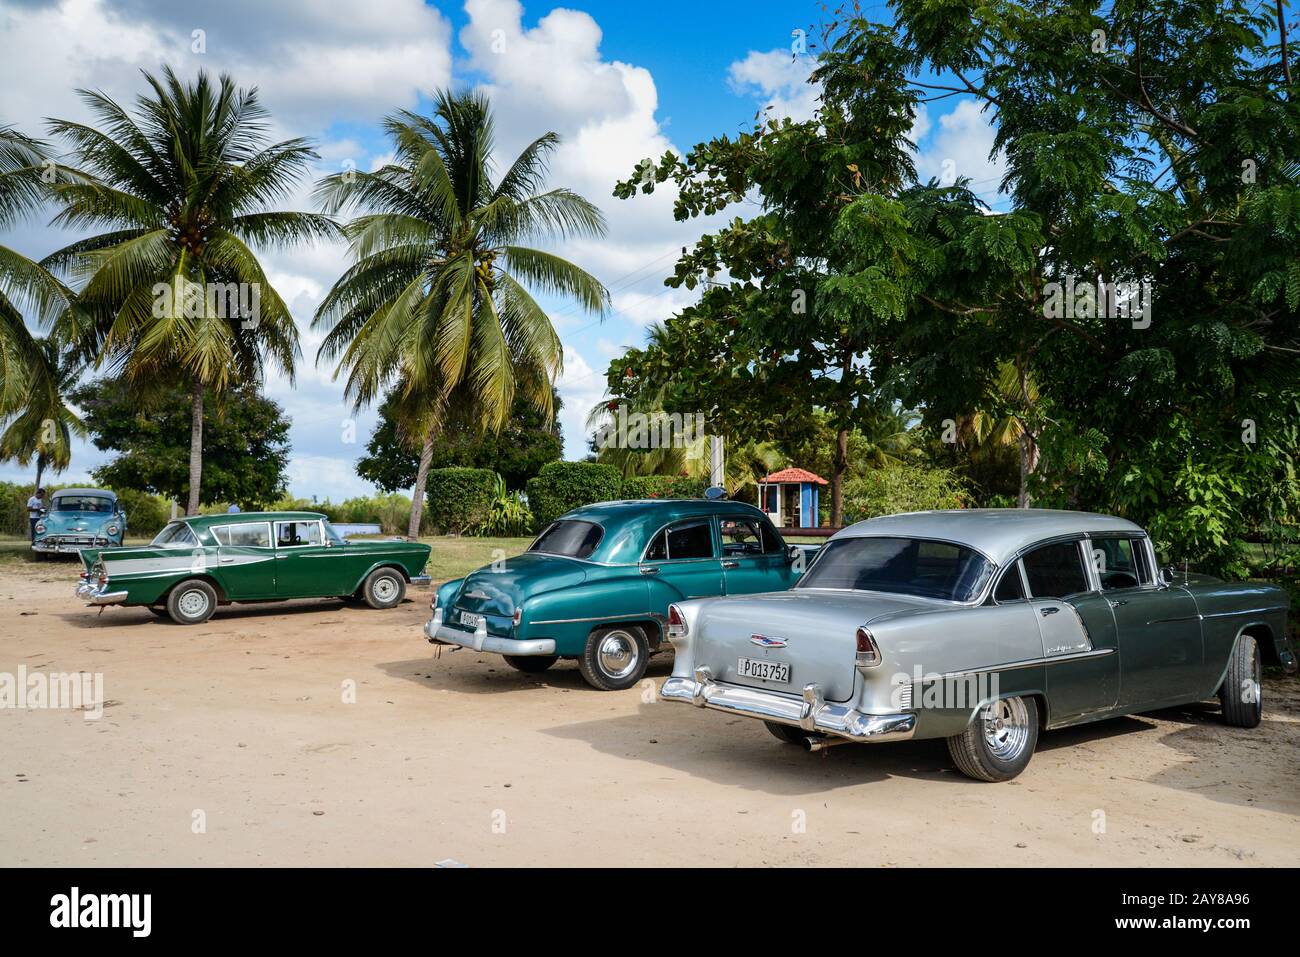 TRINIDAD, CUBA - 11 DÉCEMBRE 2014 : ancien parking américain classique sur la plage de Trinidad, CUBA. Les anciennes voitures américaines sont des vues emblématiques Banque D'Images